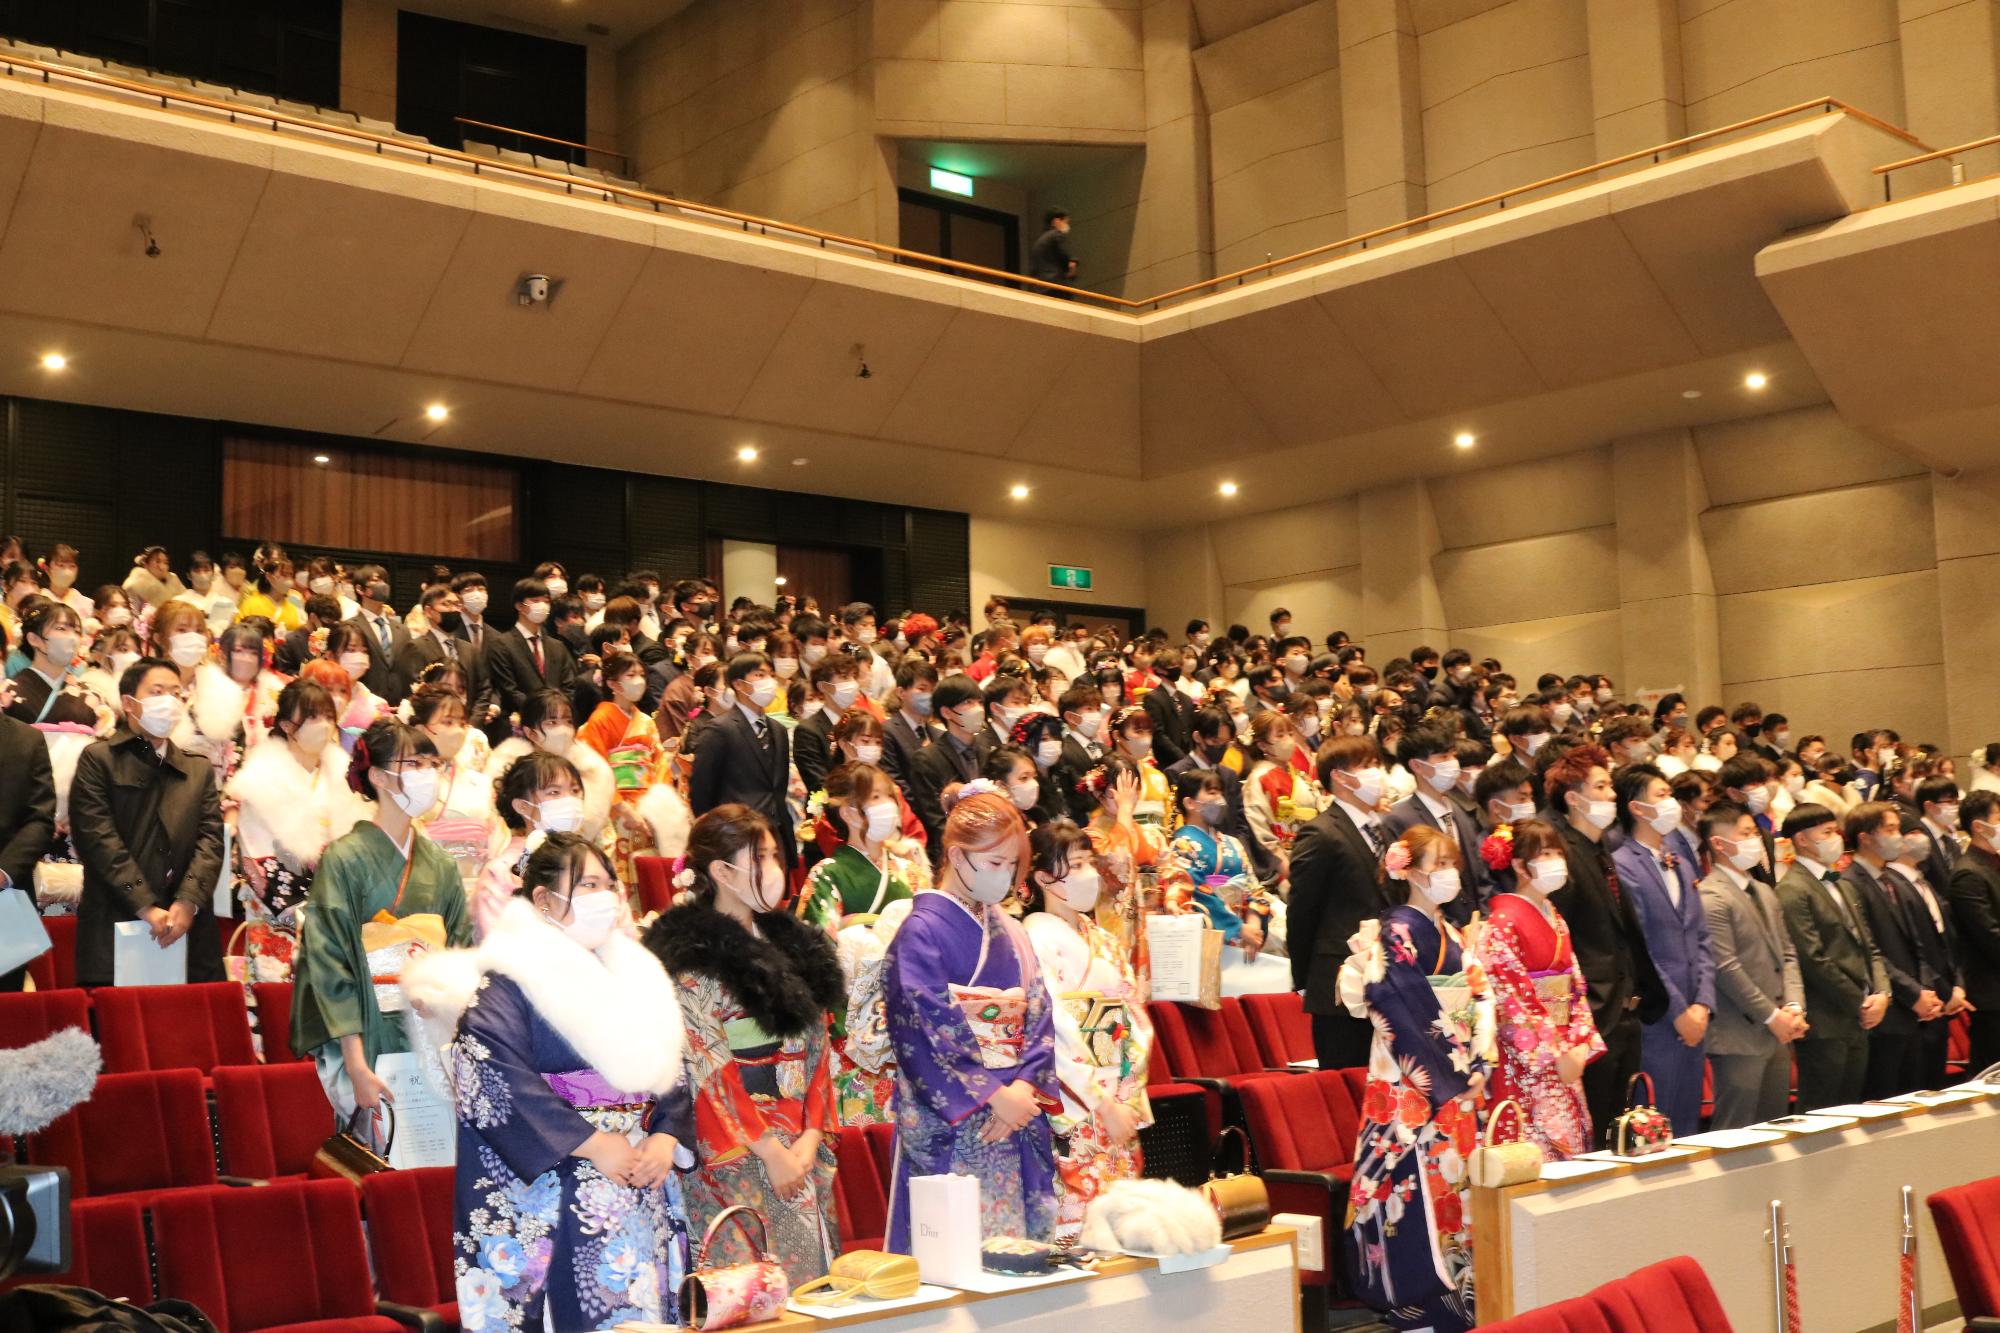 山崎文化会館ホールで式典に臨む20歳の新成人らが並んで立っている写真